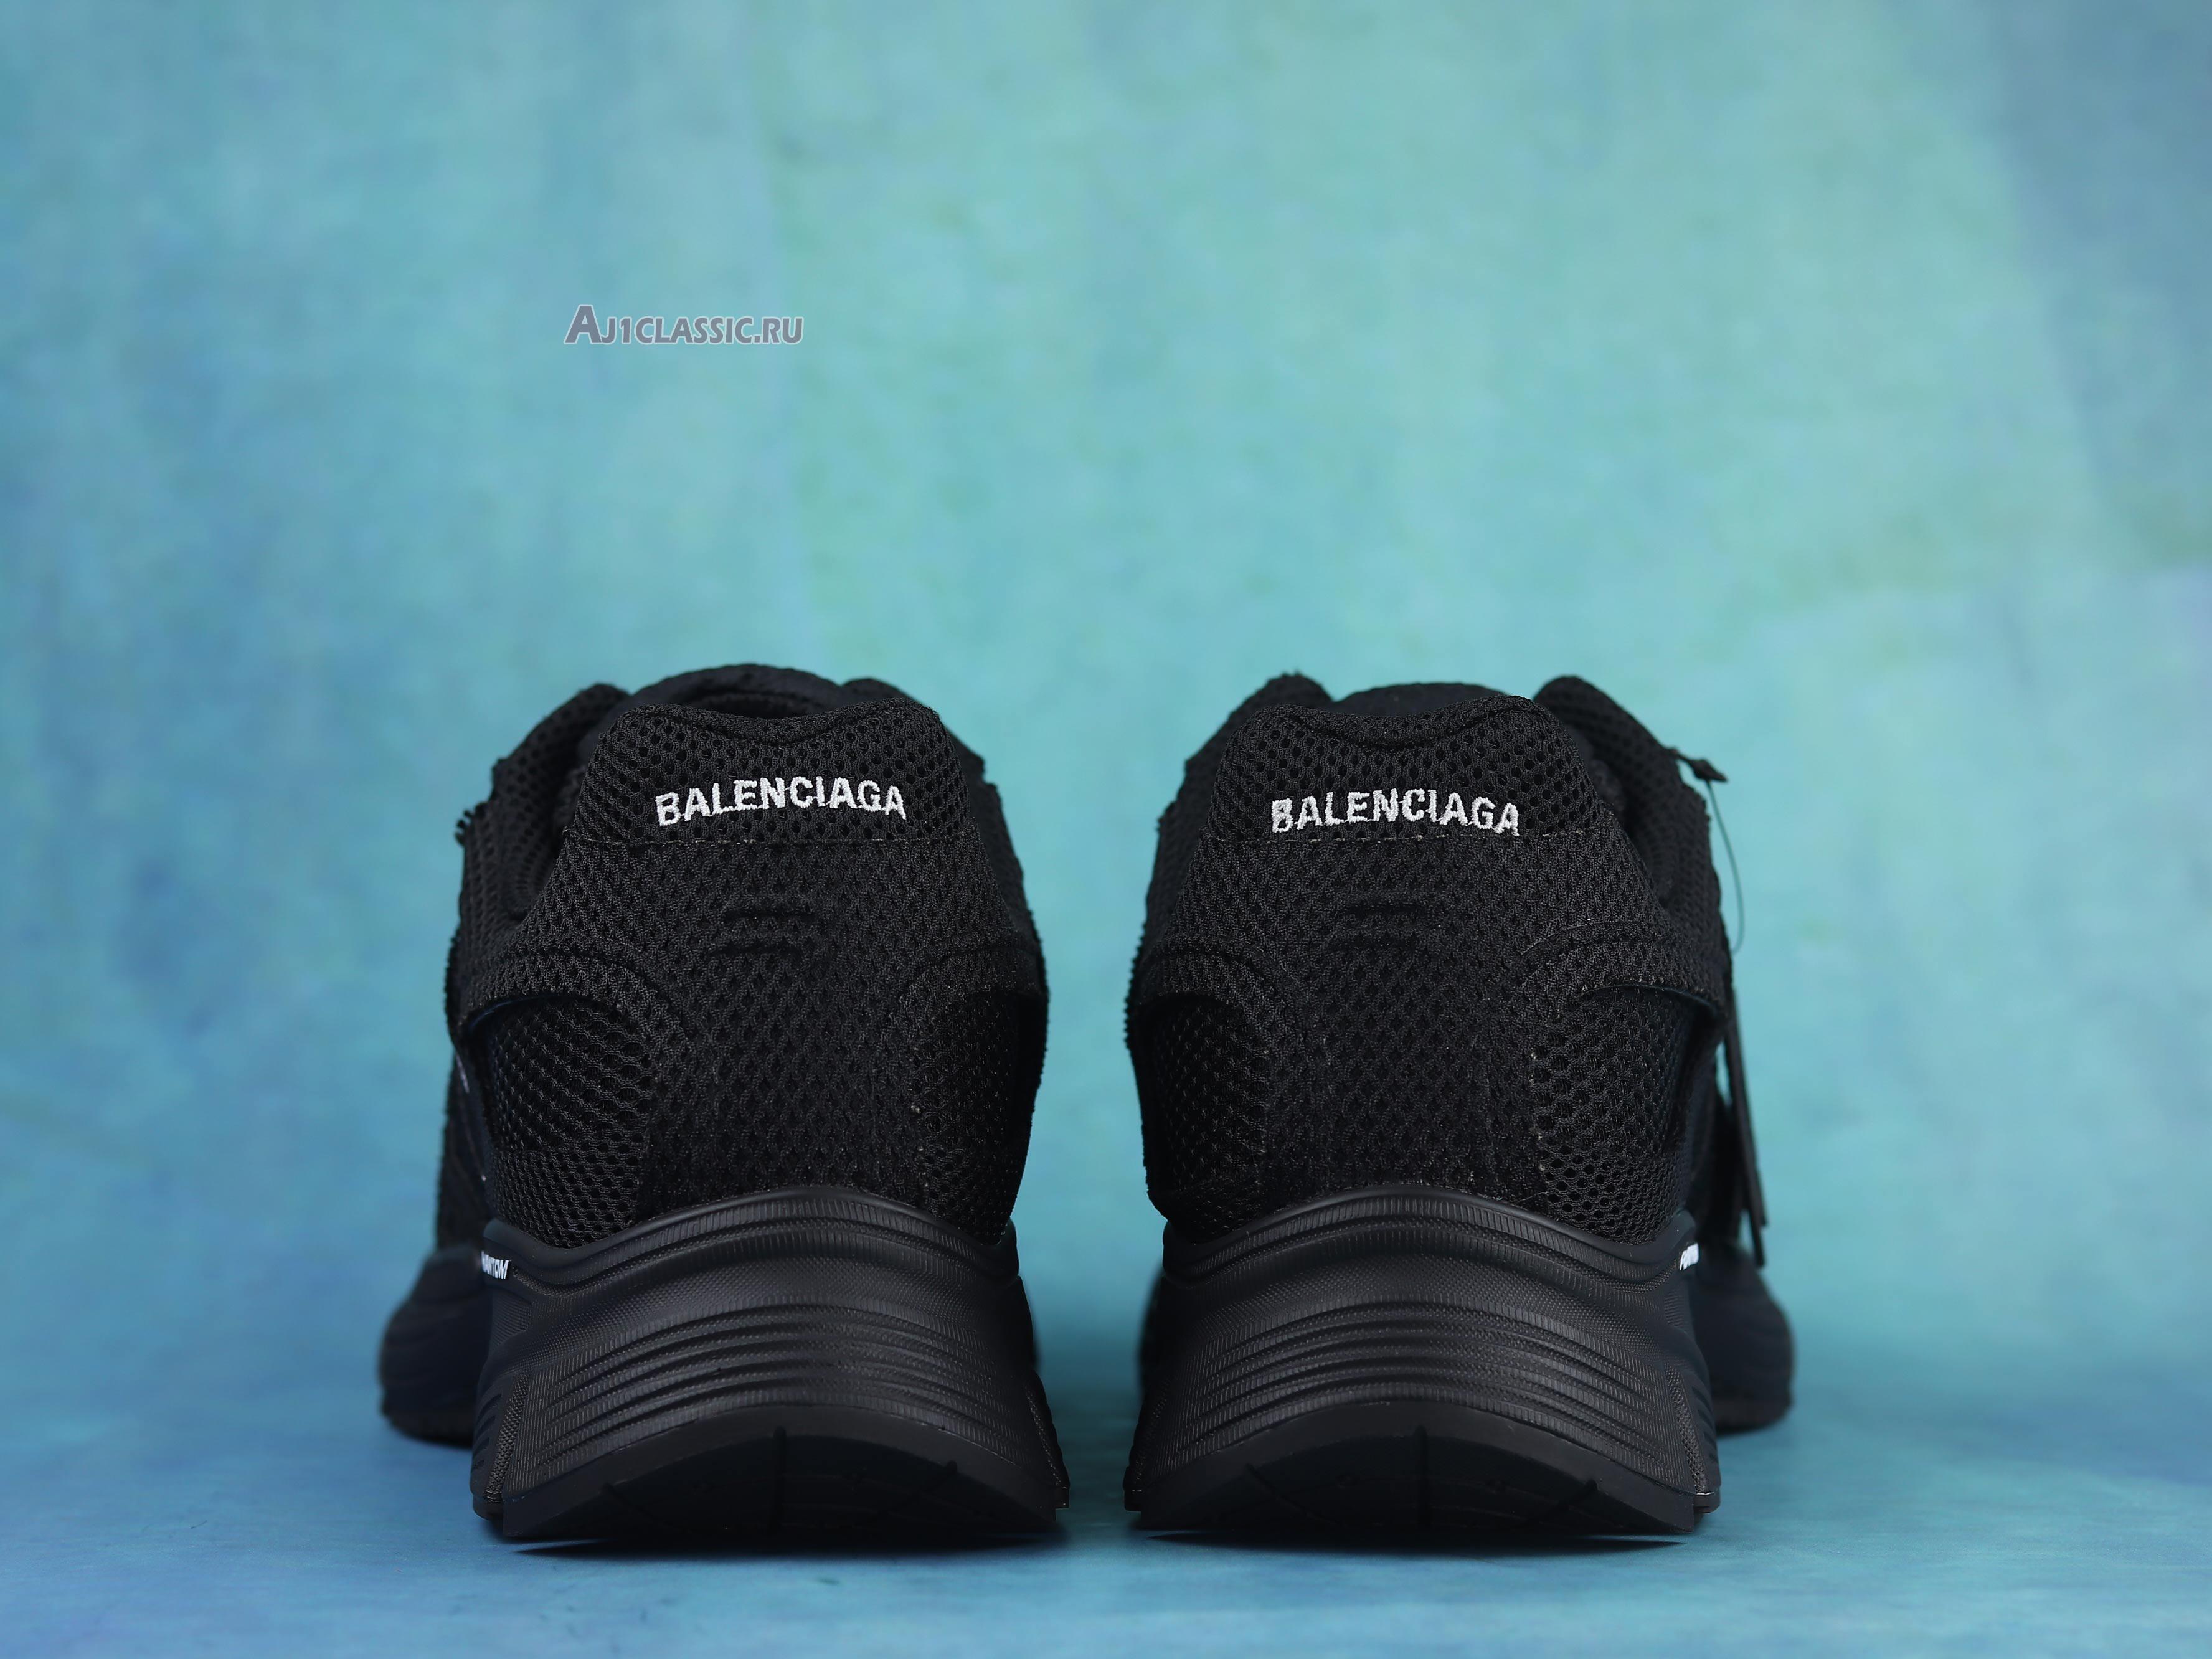 Balenciaga Phantom Sneaker "Black" 678869 W2E92 1000